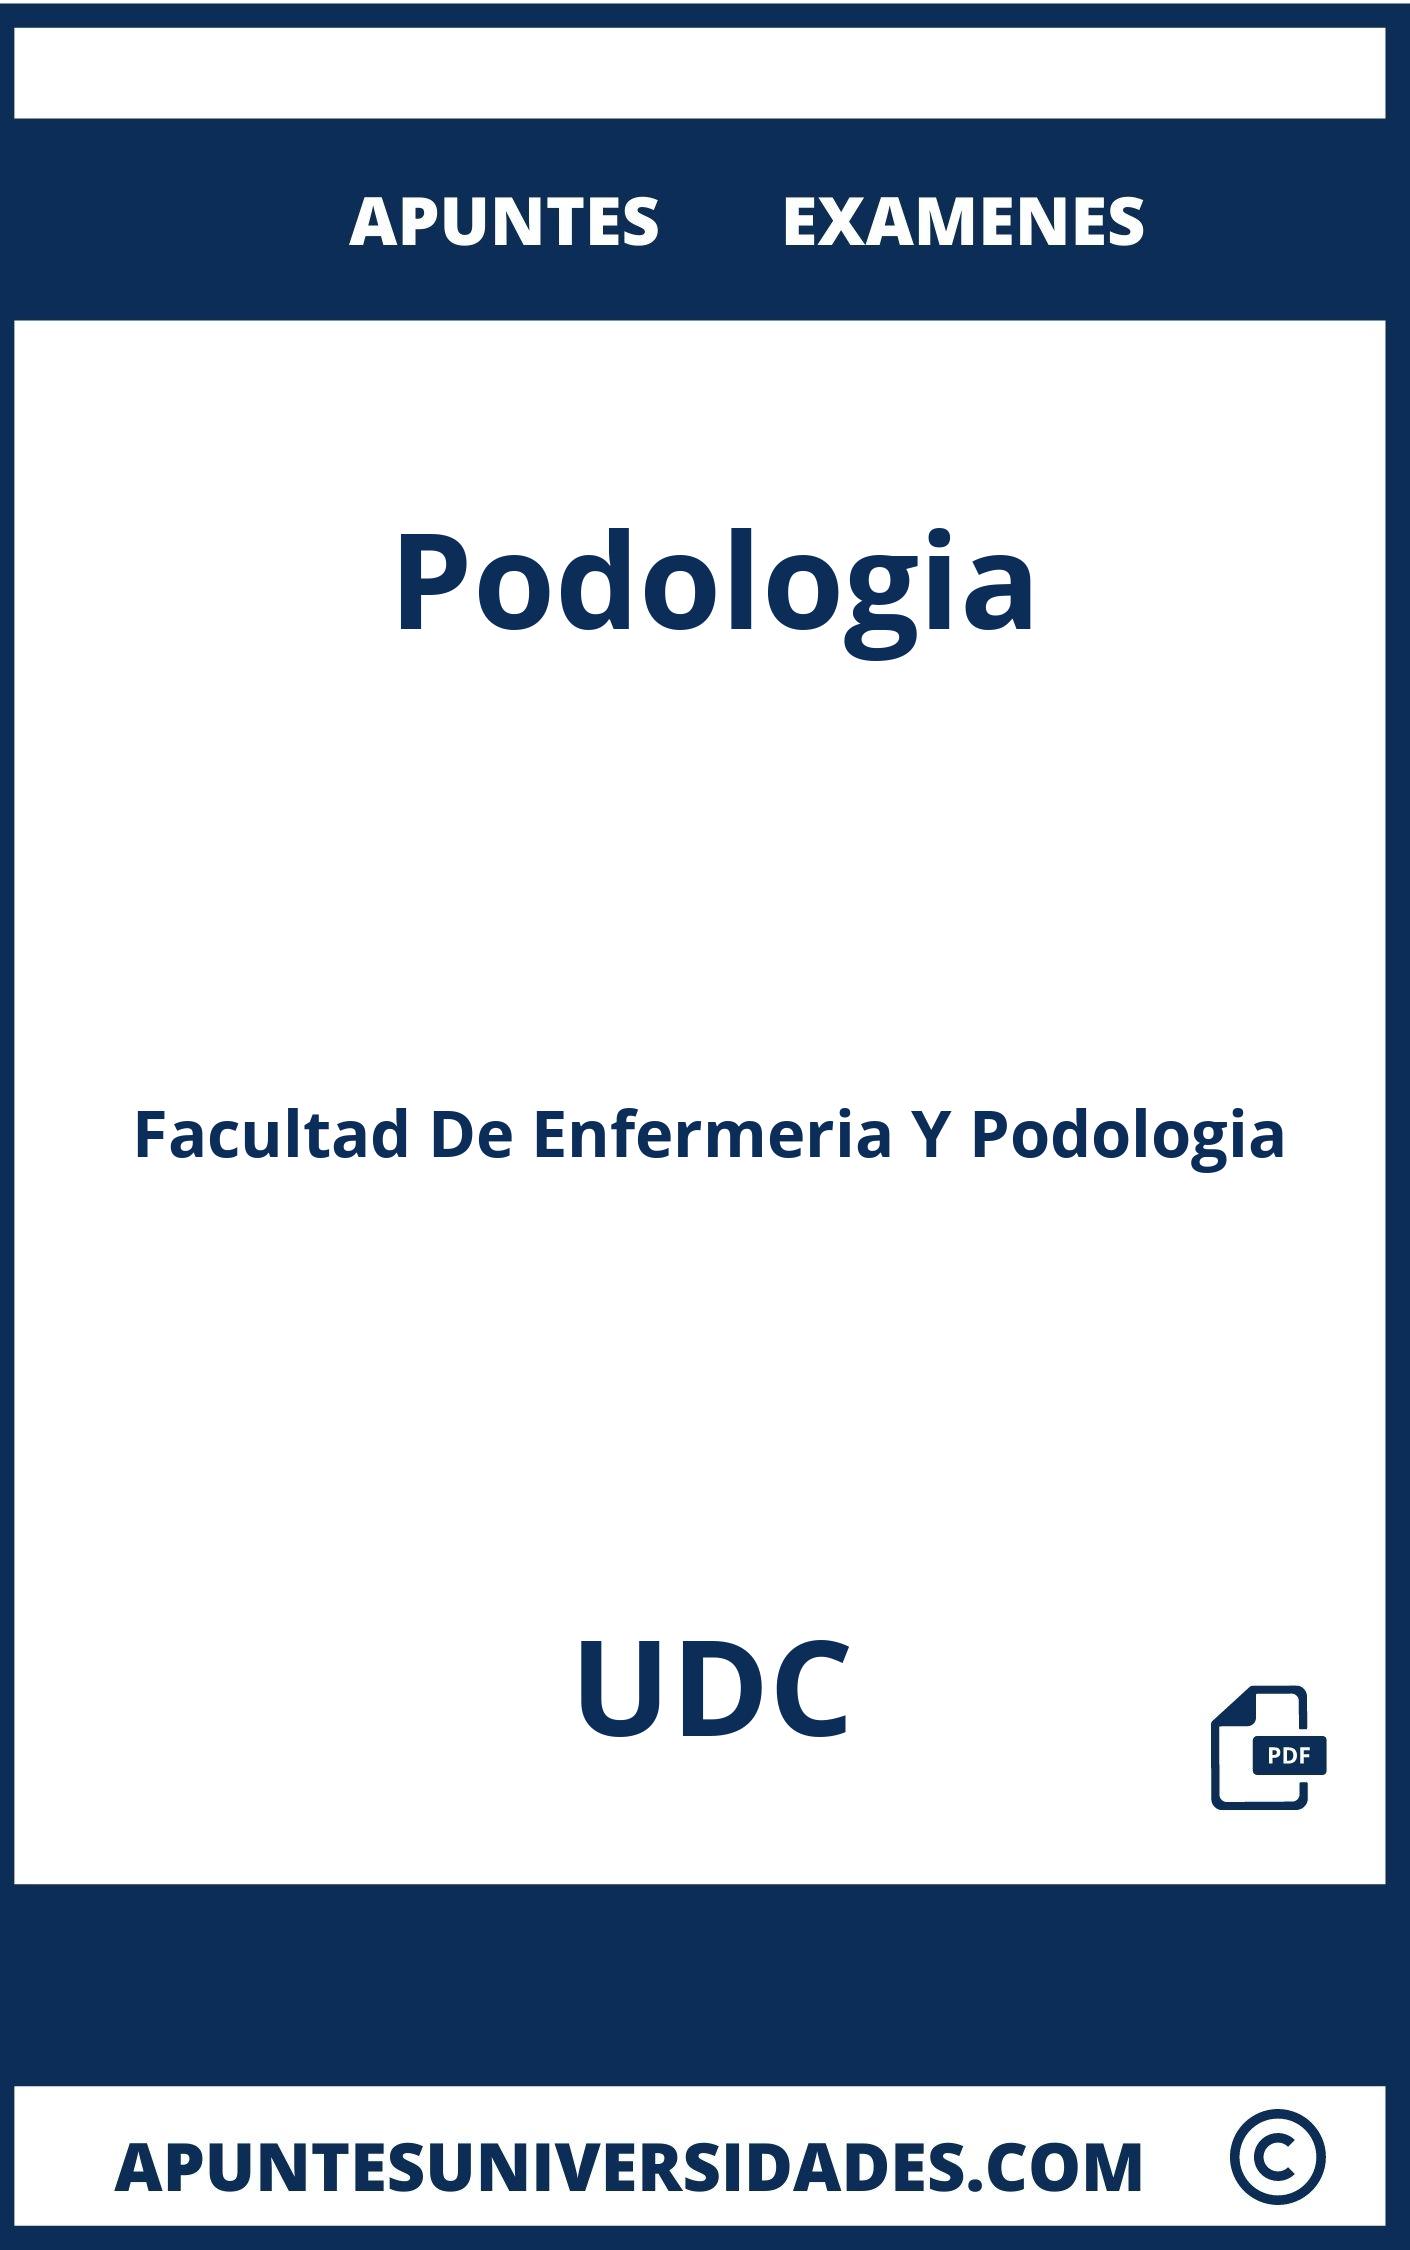 Apuntes y Examenes de Podologia UDC